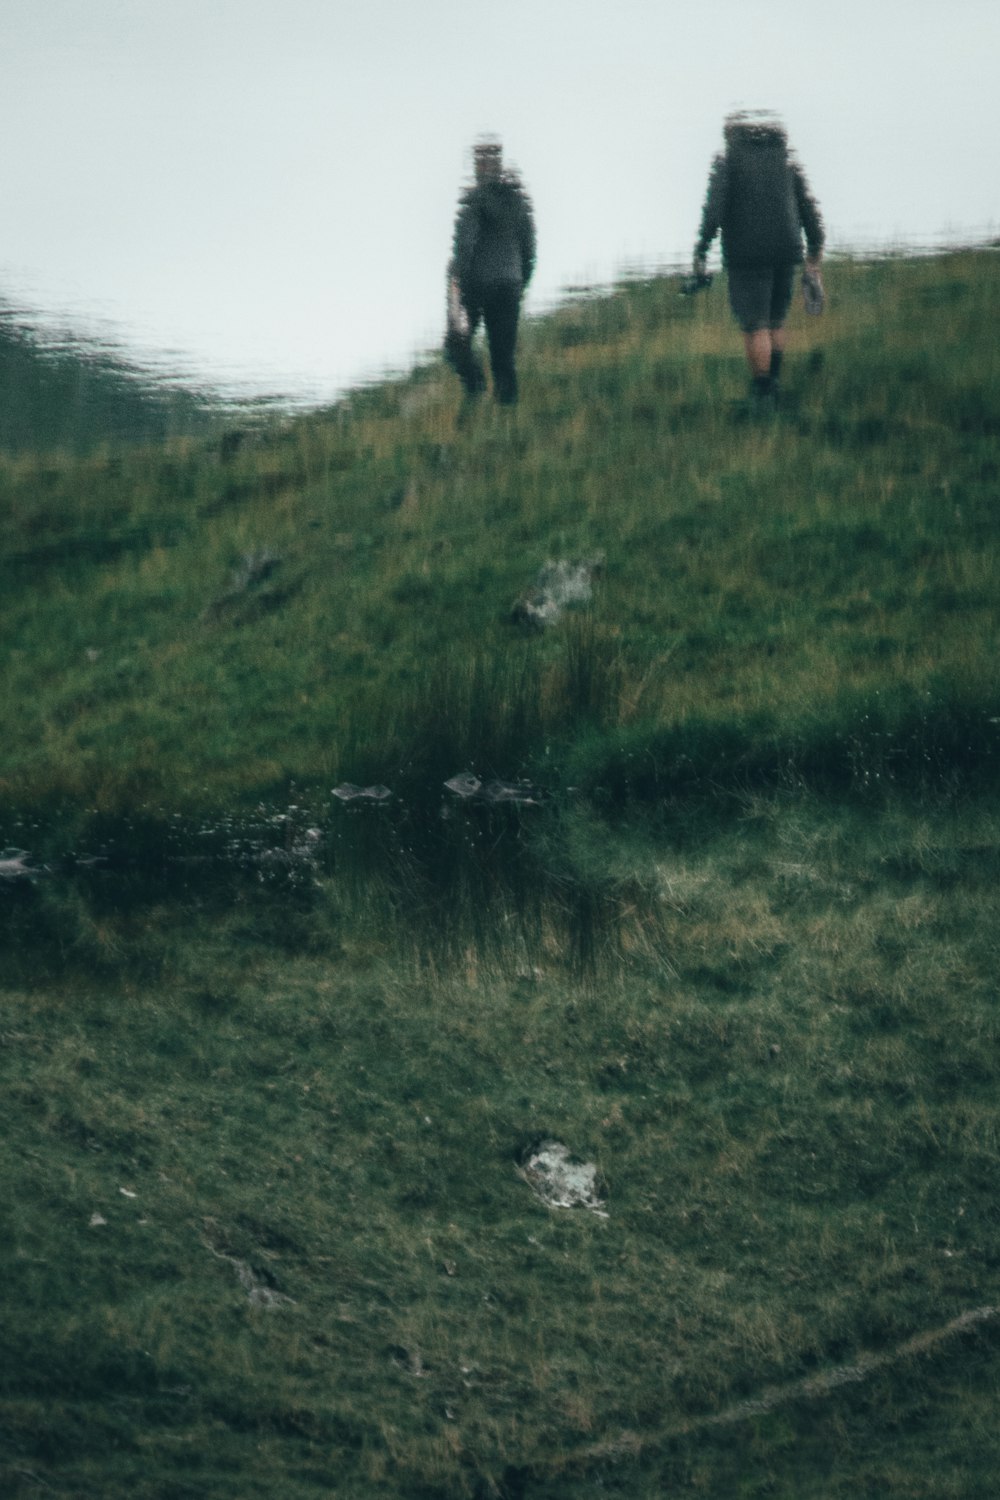 Persona in pantaloni neri in piedi sul campo di erba verde durante il giorno